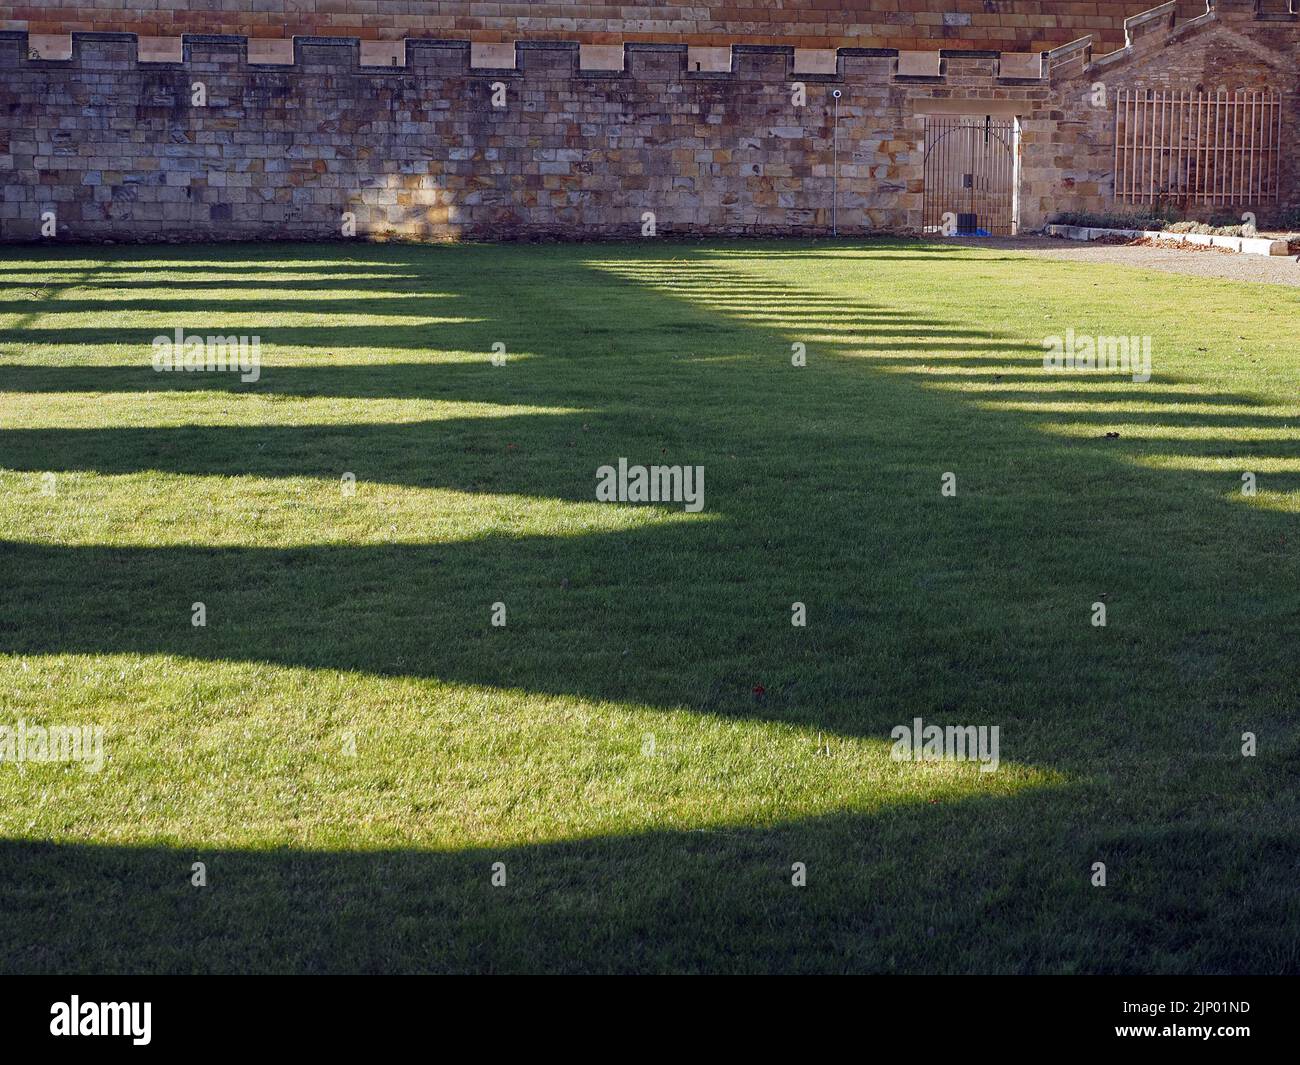 Patrón retraído de sombras largas proyectadas por arcos almenados sobre césped de Bishop's Palace, Bishop Auckland, County Durham, Inglaterra Reino Unido Foto de stock